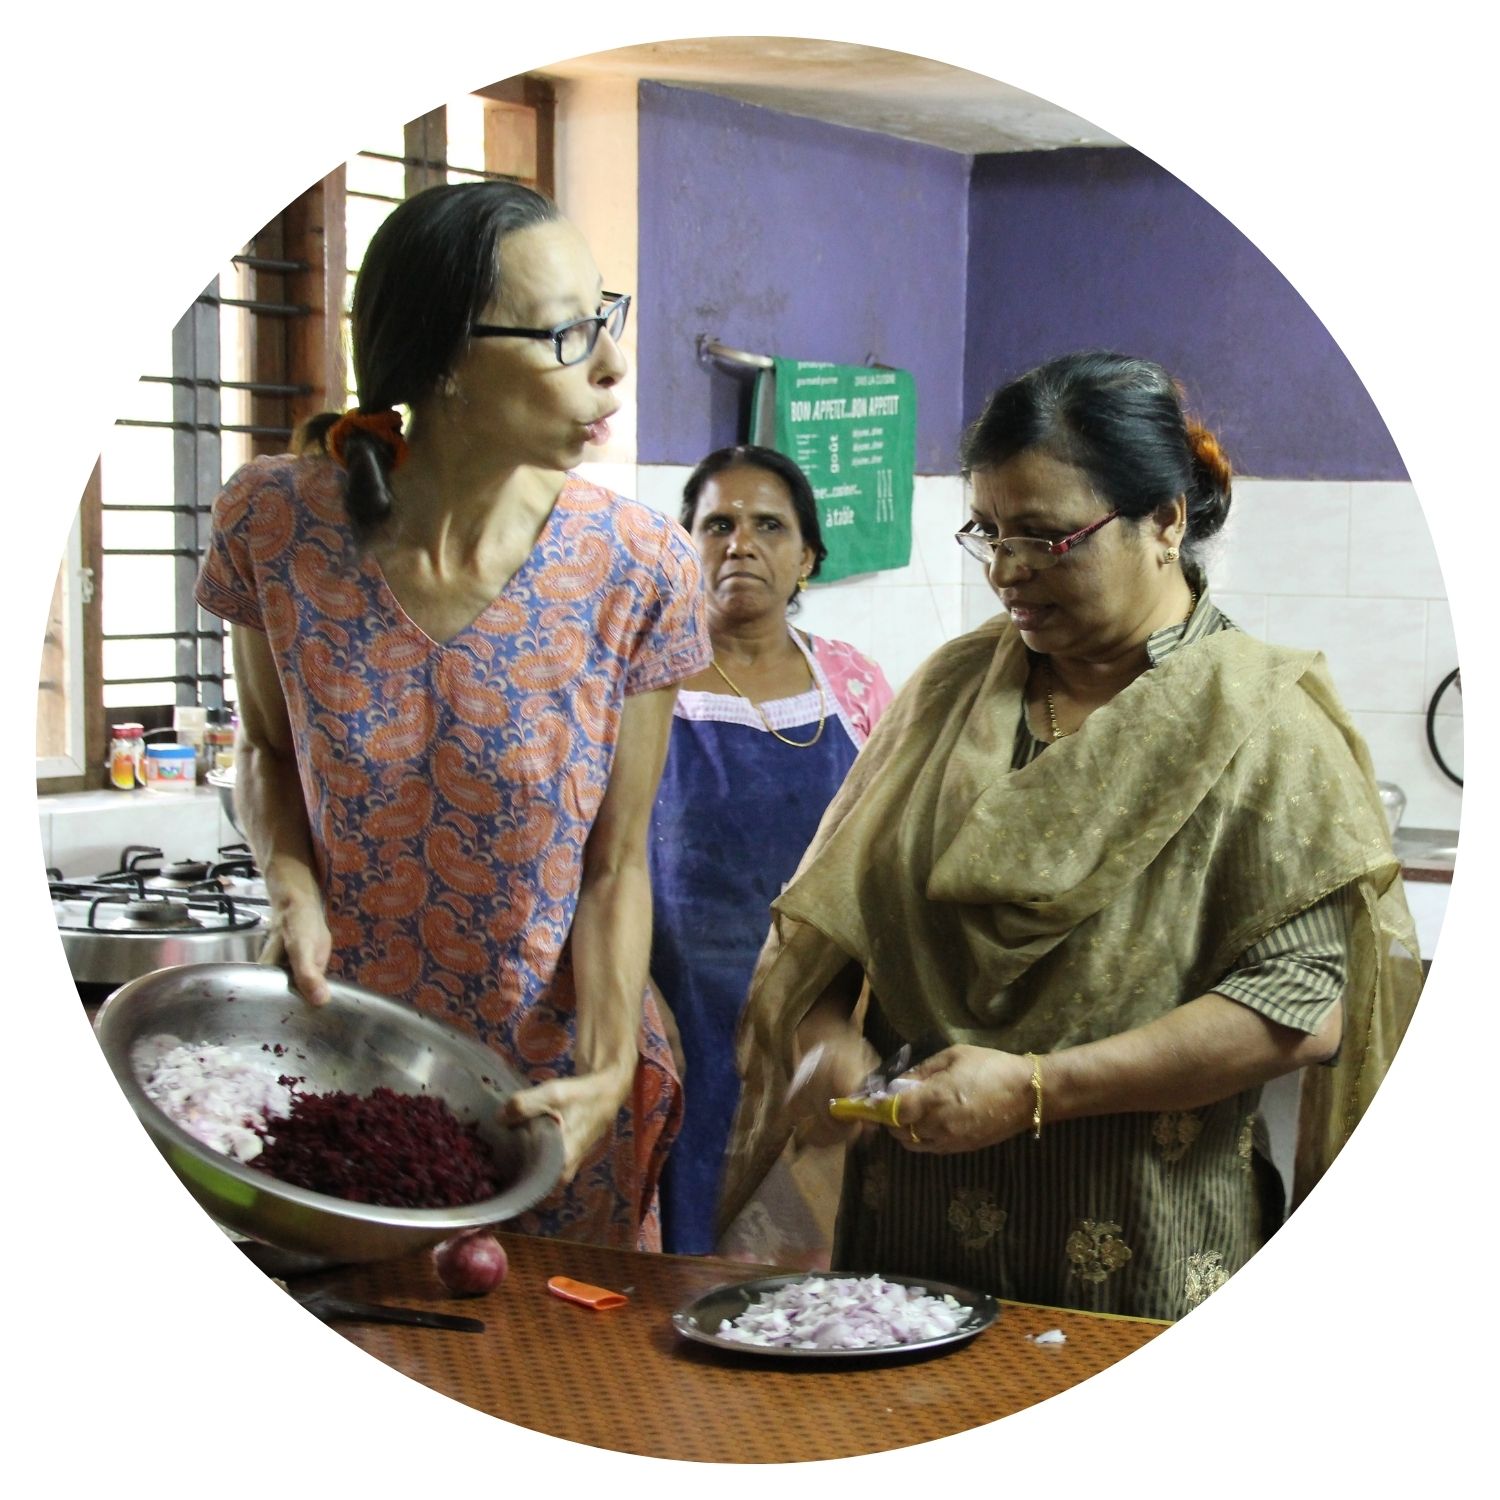 Trois femmes indiennes préparent un repas ensemble dans une cuisine traditionnelle, tout en discutant et partageant des moments de convivialité.